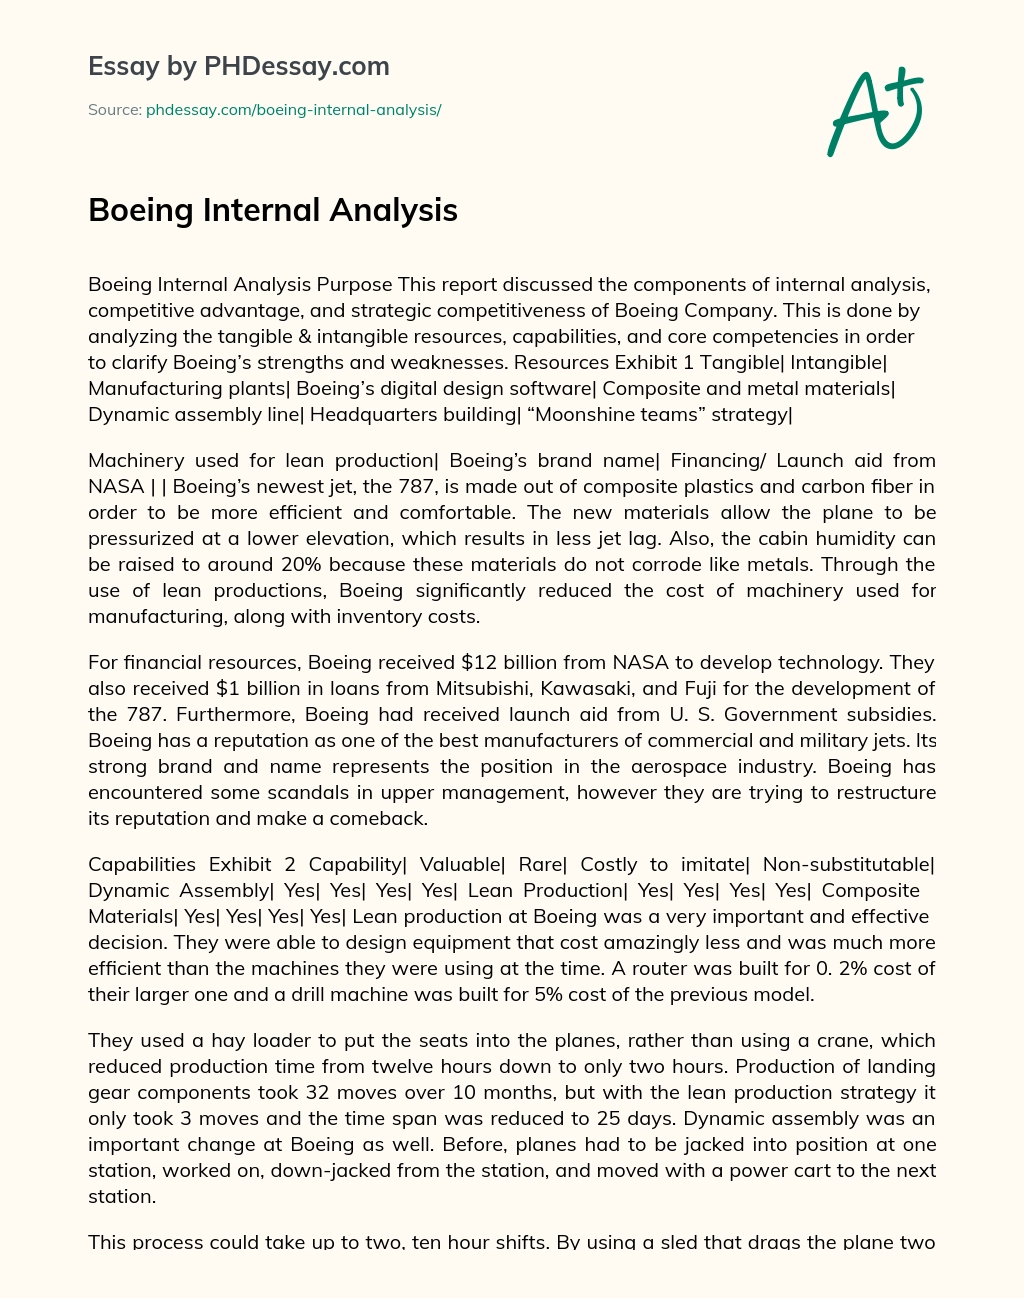 Boeing Internal Analysis essay